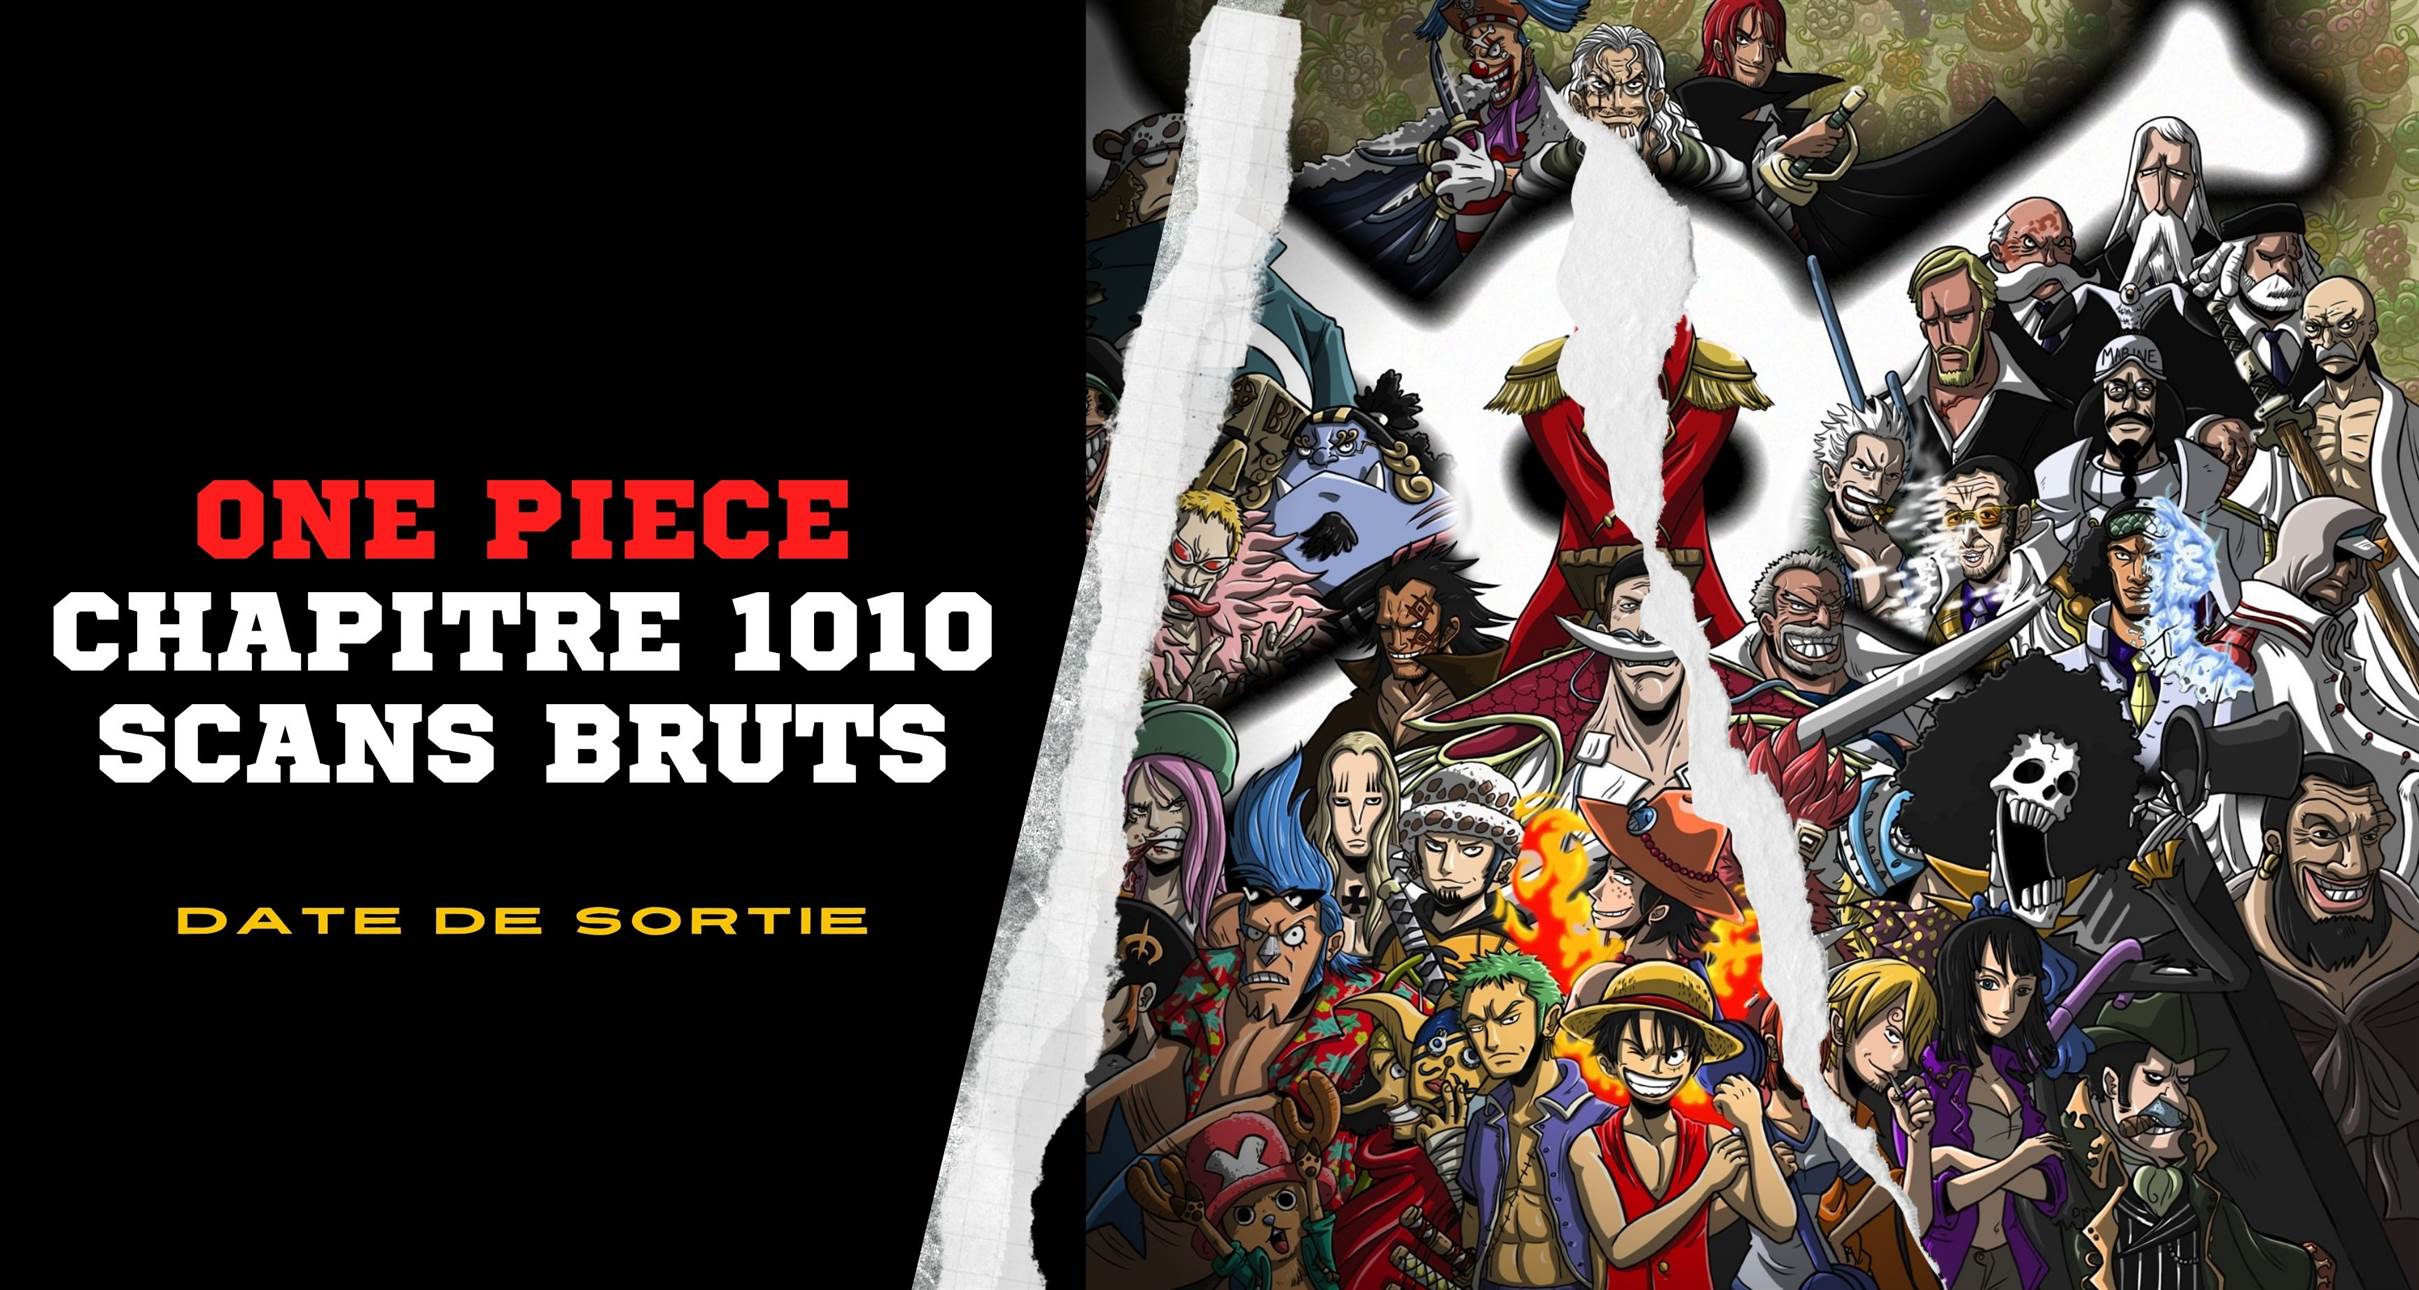 One Piece 1010 Scans bruts